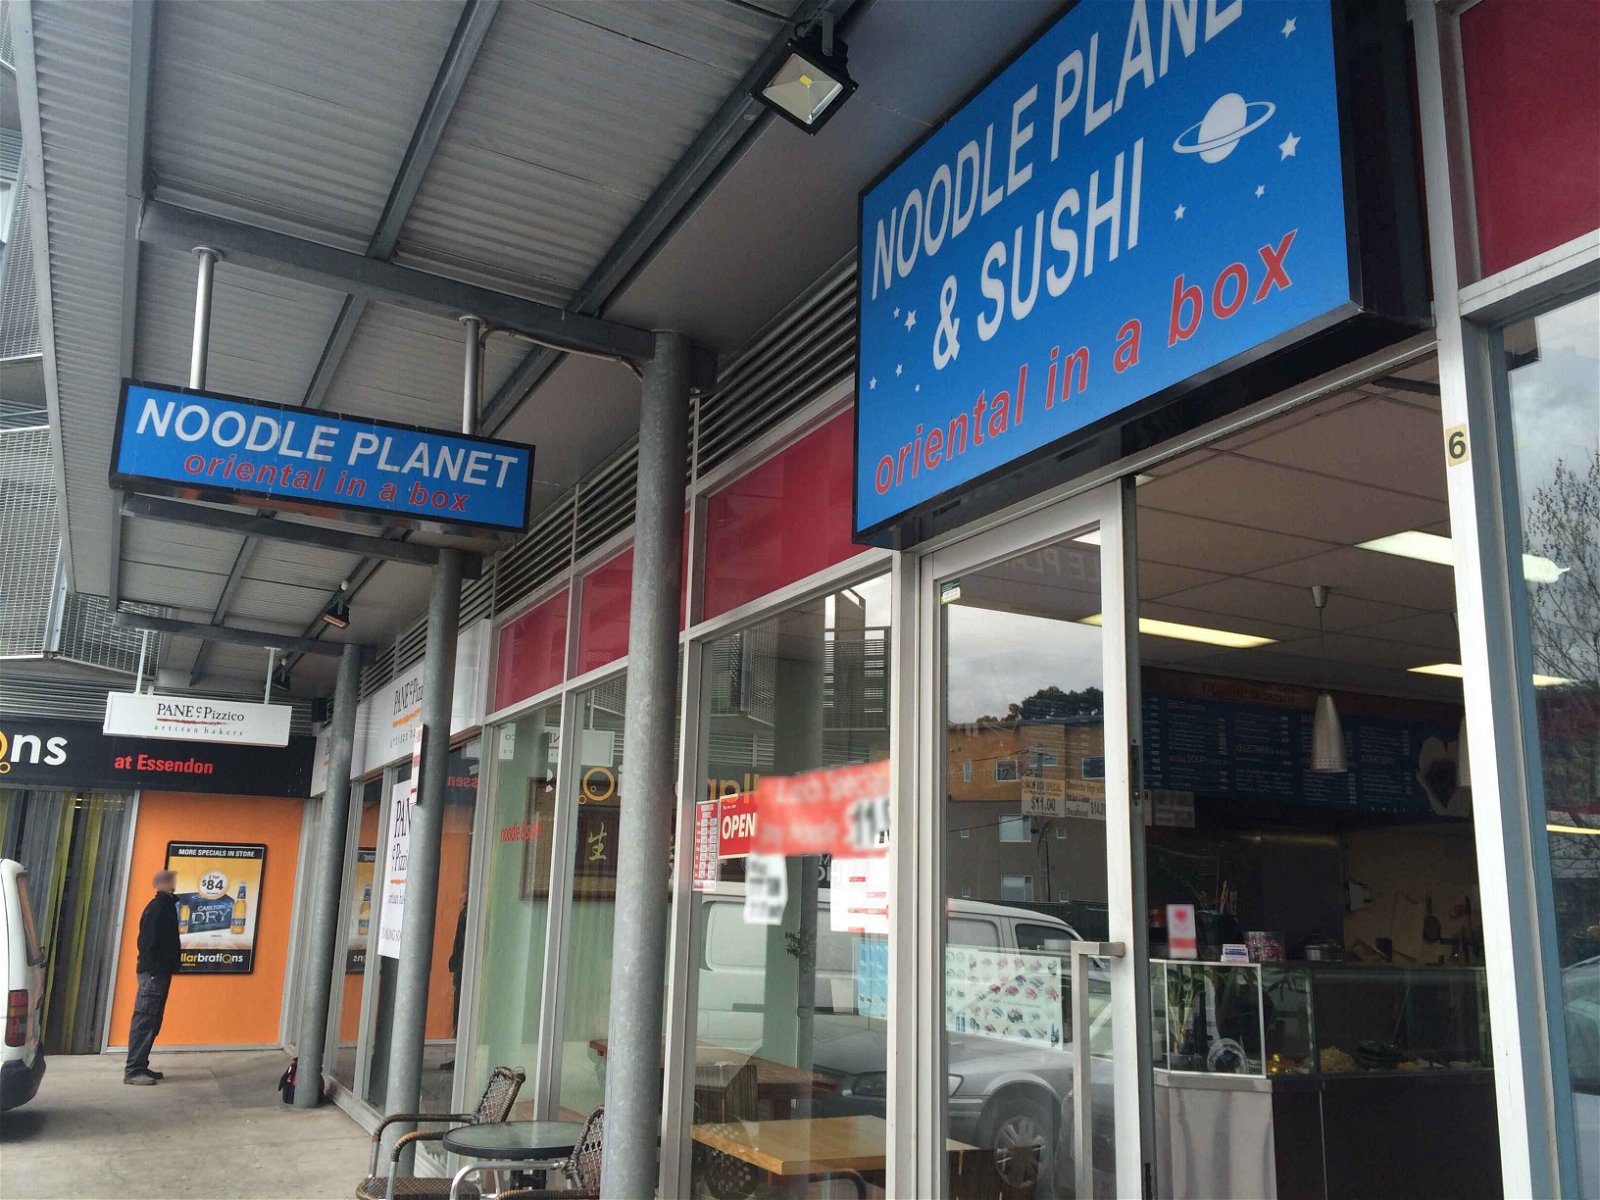 Noodle Planet - Food Delivery Shop